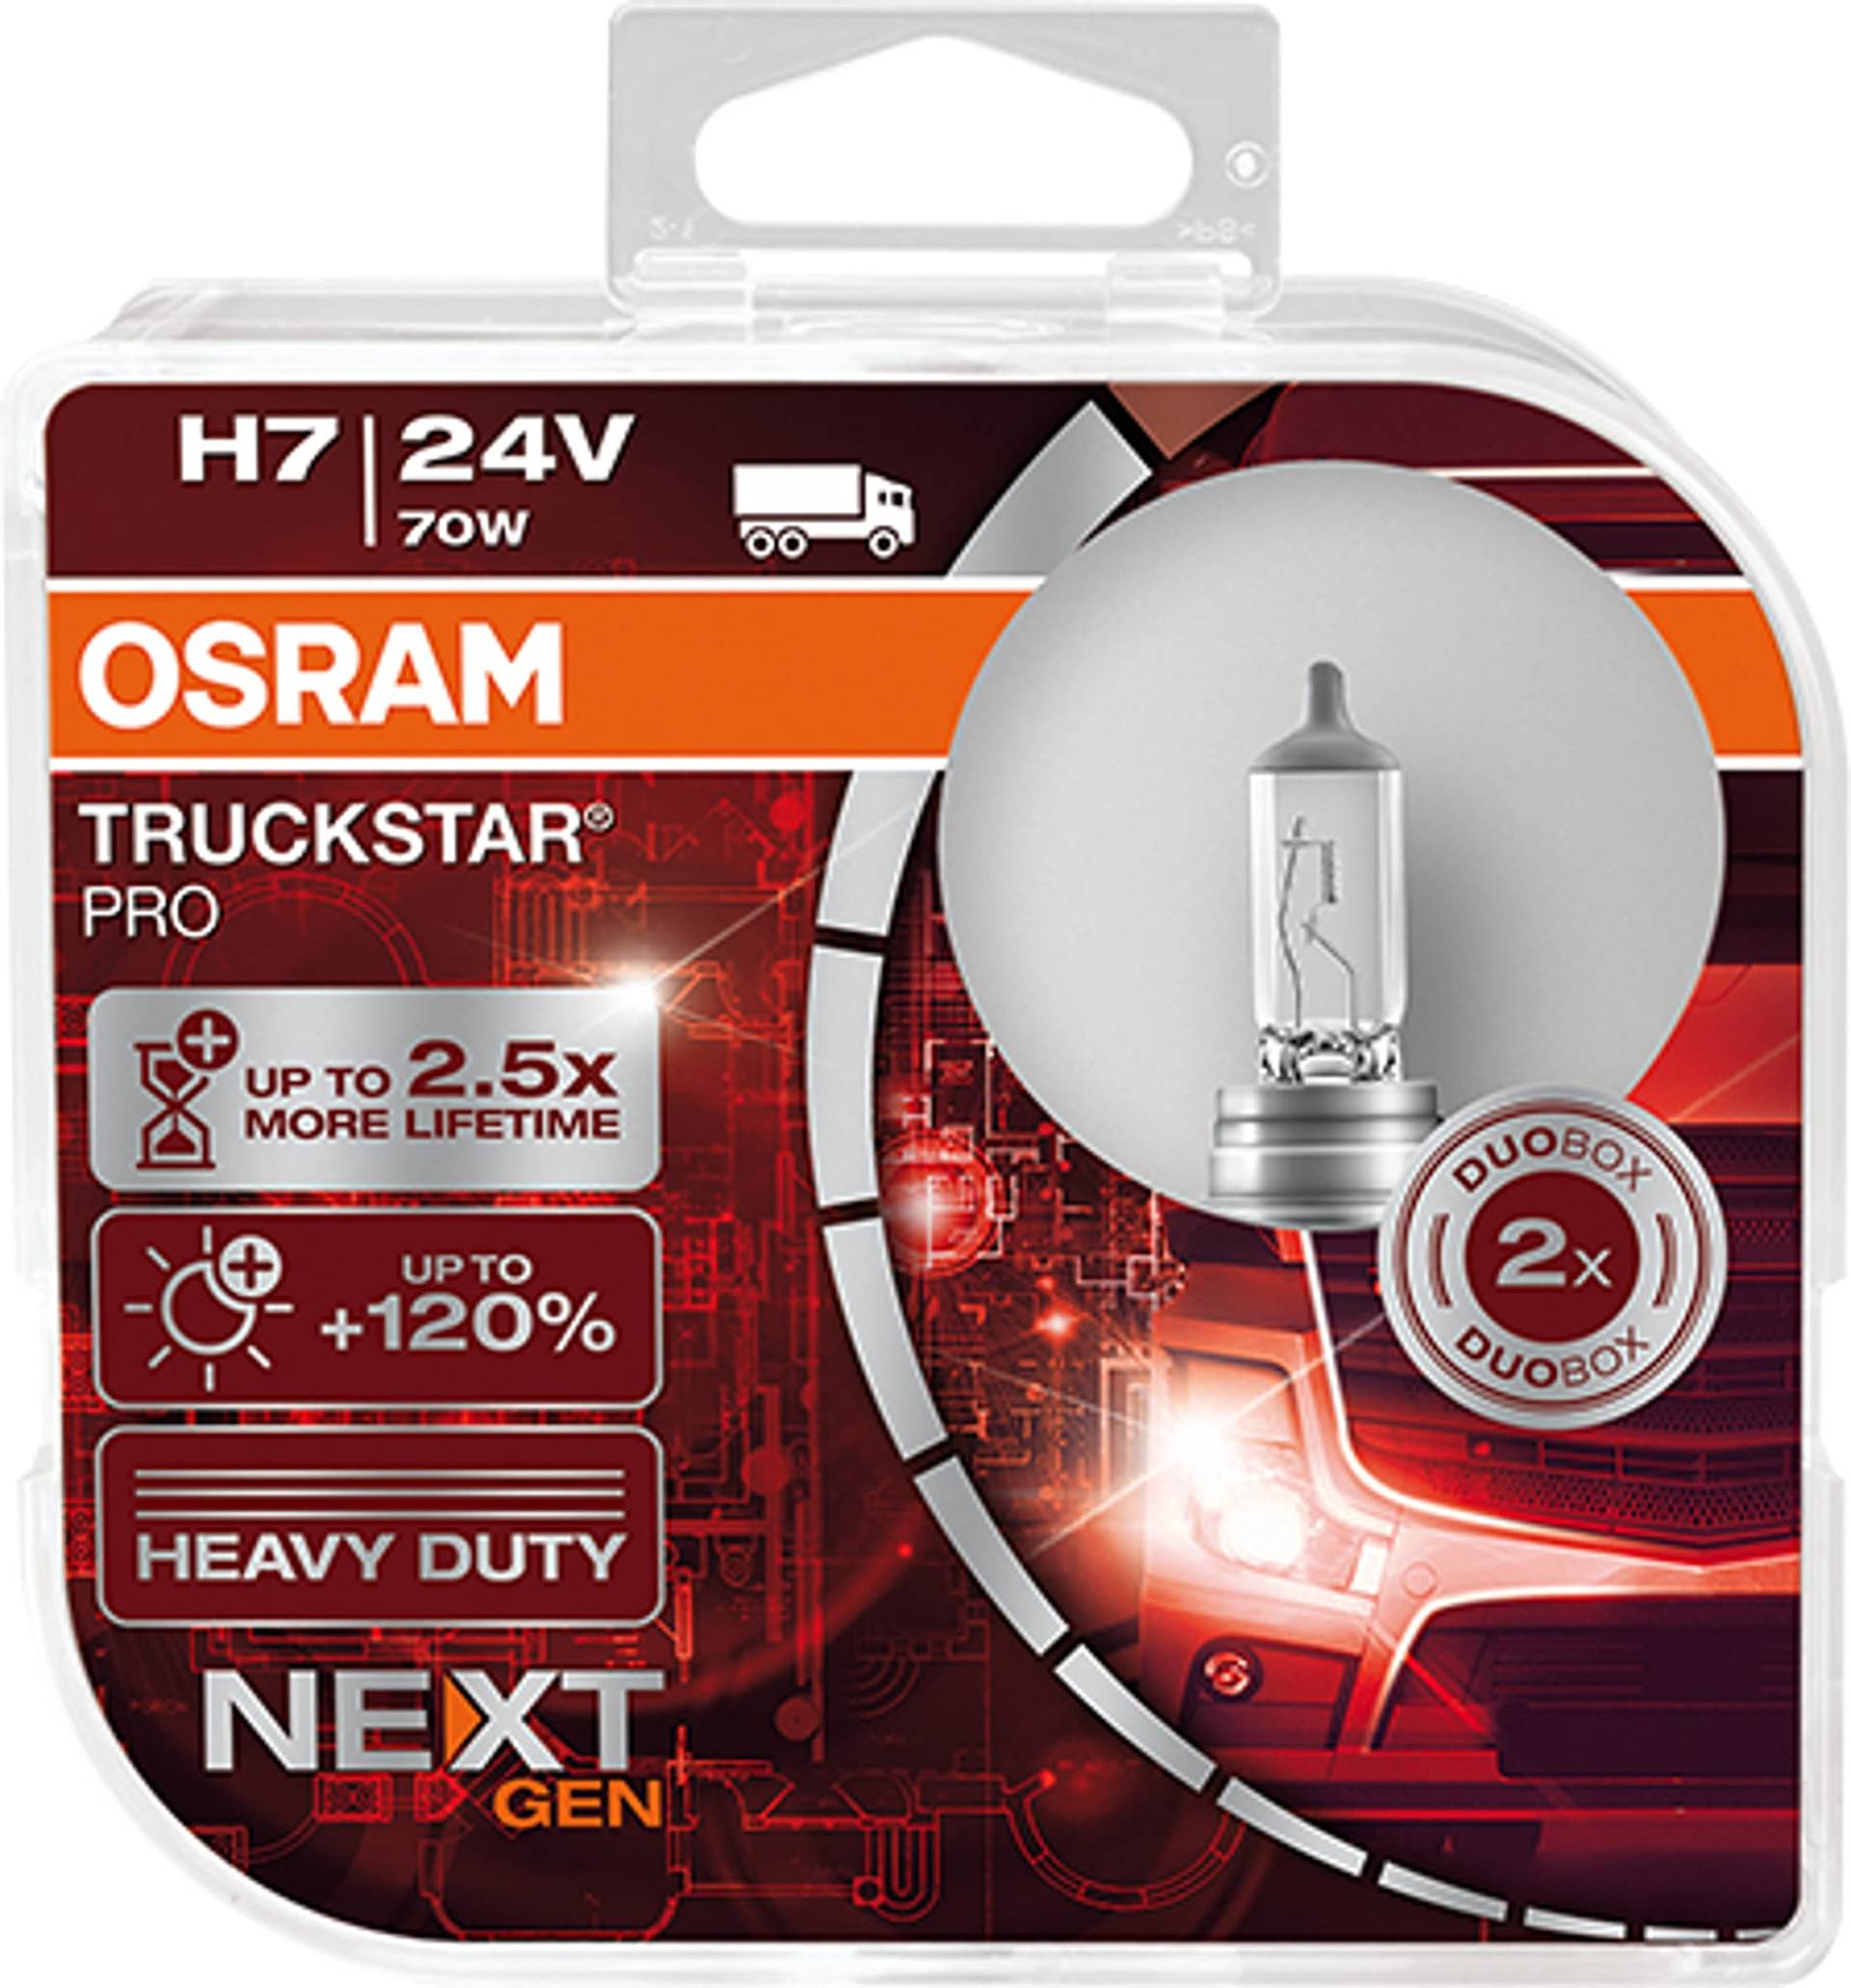 OSRAM TRUCKSTAR® PRO H7, 120% mehr Helligkeit, Halogen-Scheinwerferlampe, 64215TSP-HCB, 24V LKW Lampe, Duo Box (2 Lampen) von Osram